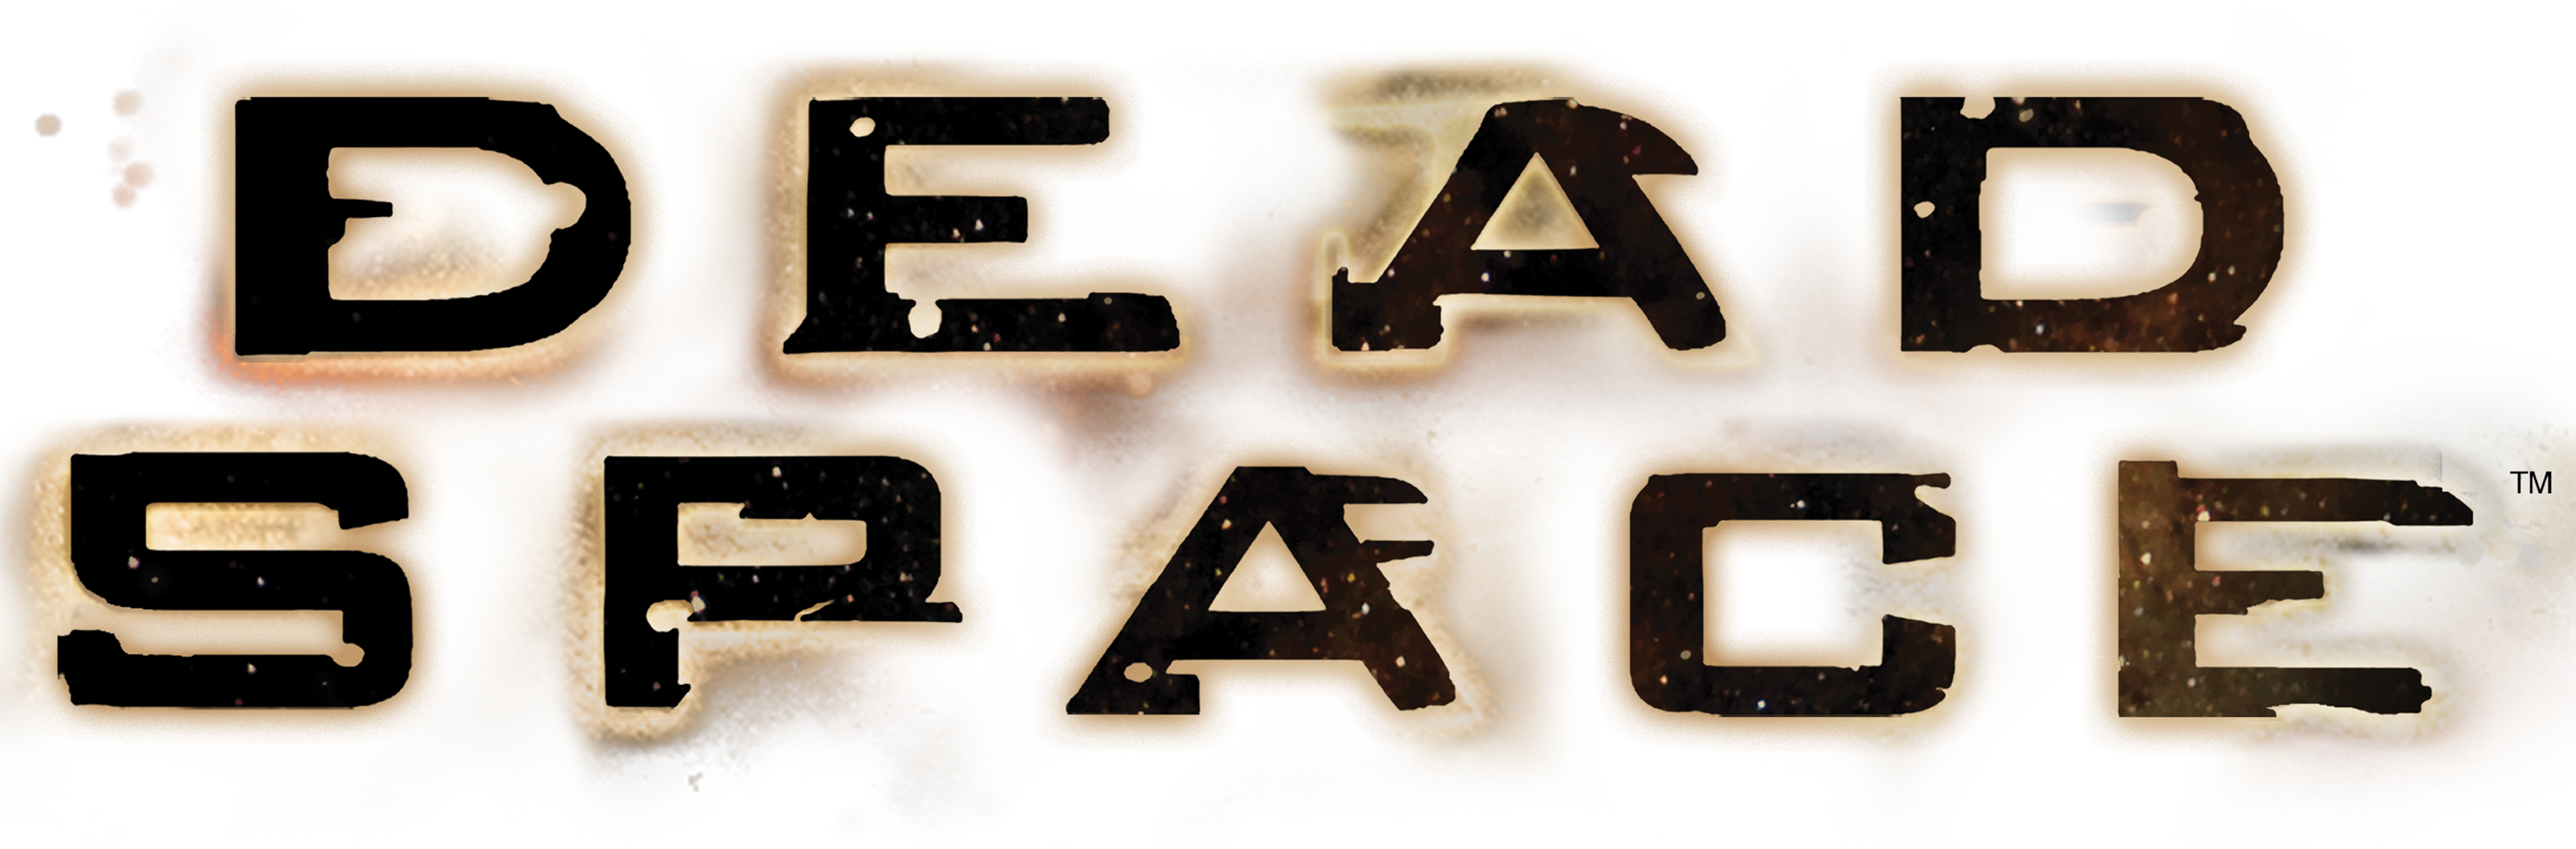 Dead Space – Wikipédia, a enciclopédia livre